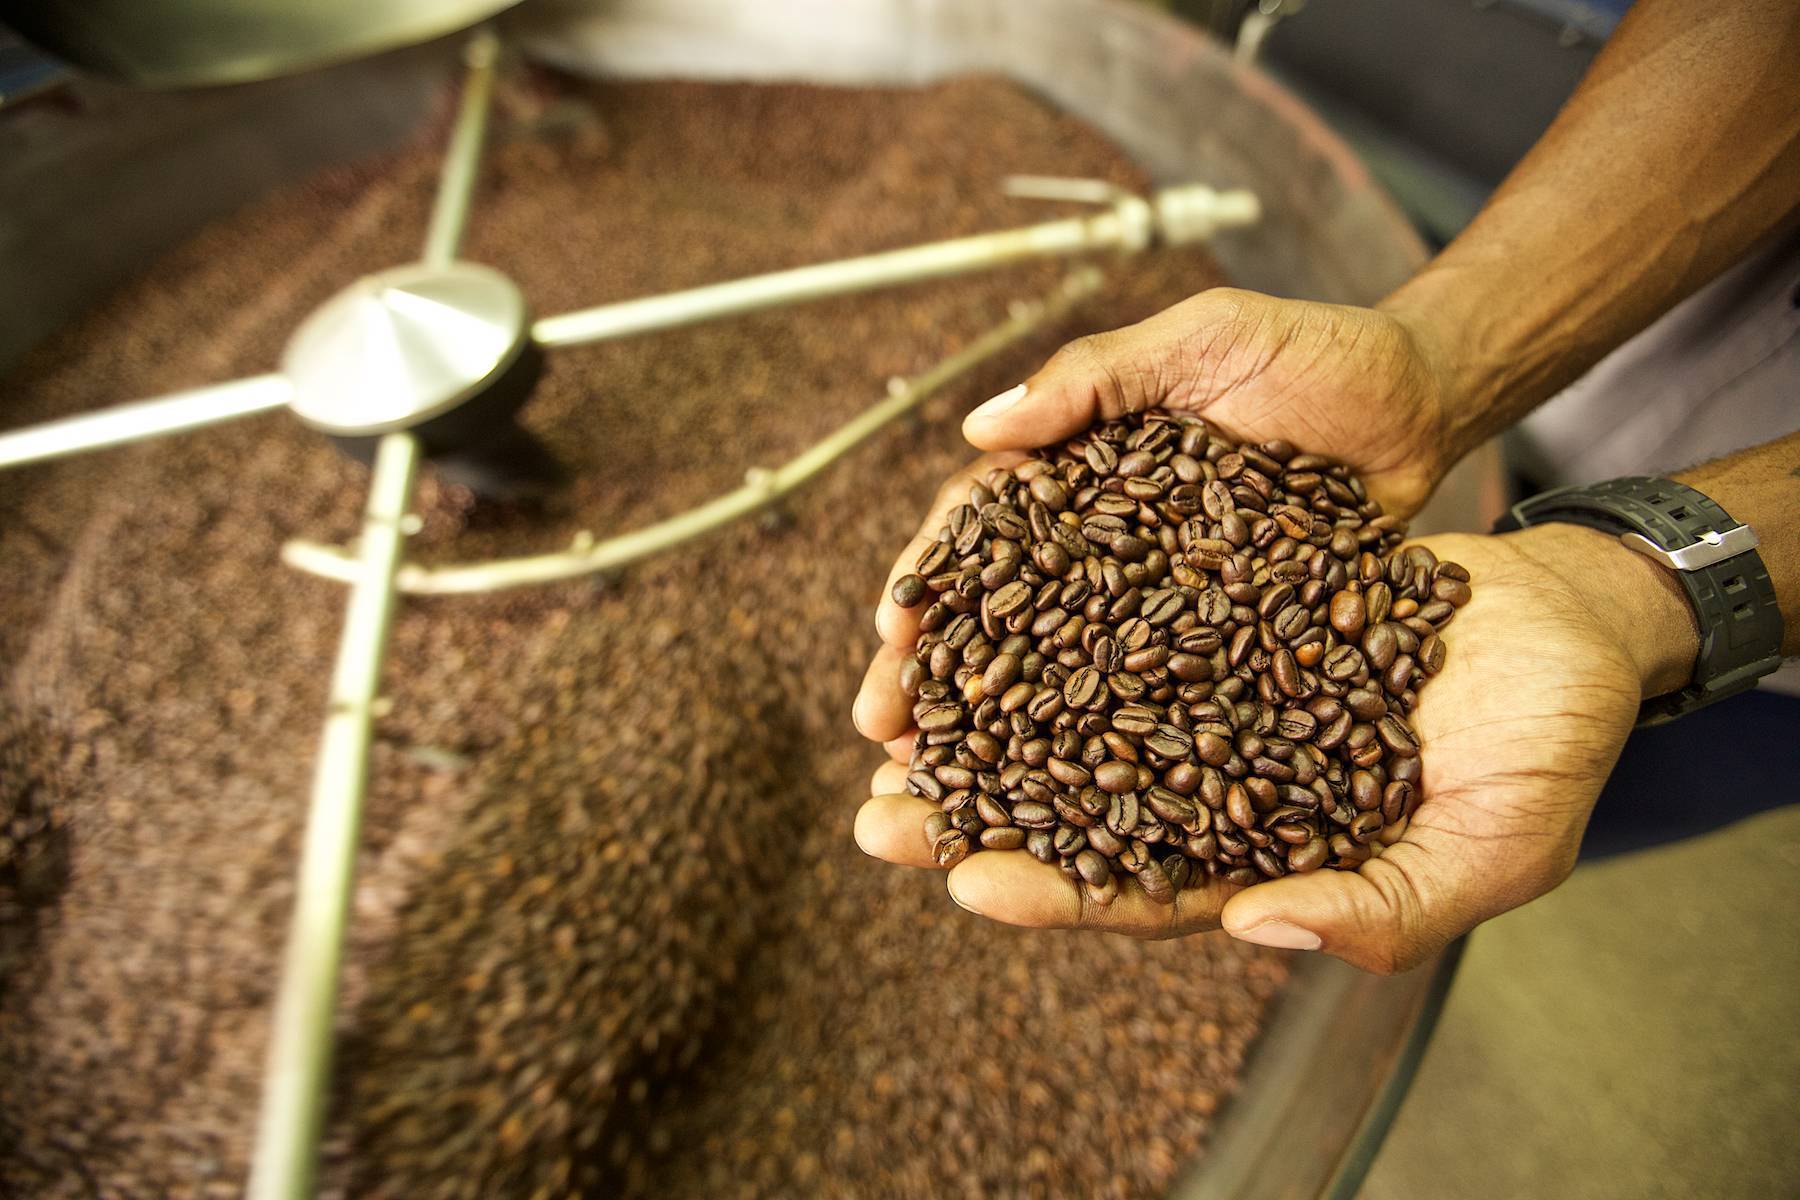 Сублимированный кофе: технология производства, польза и вред